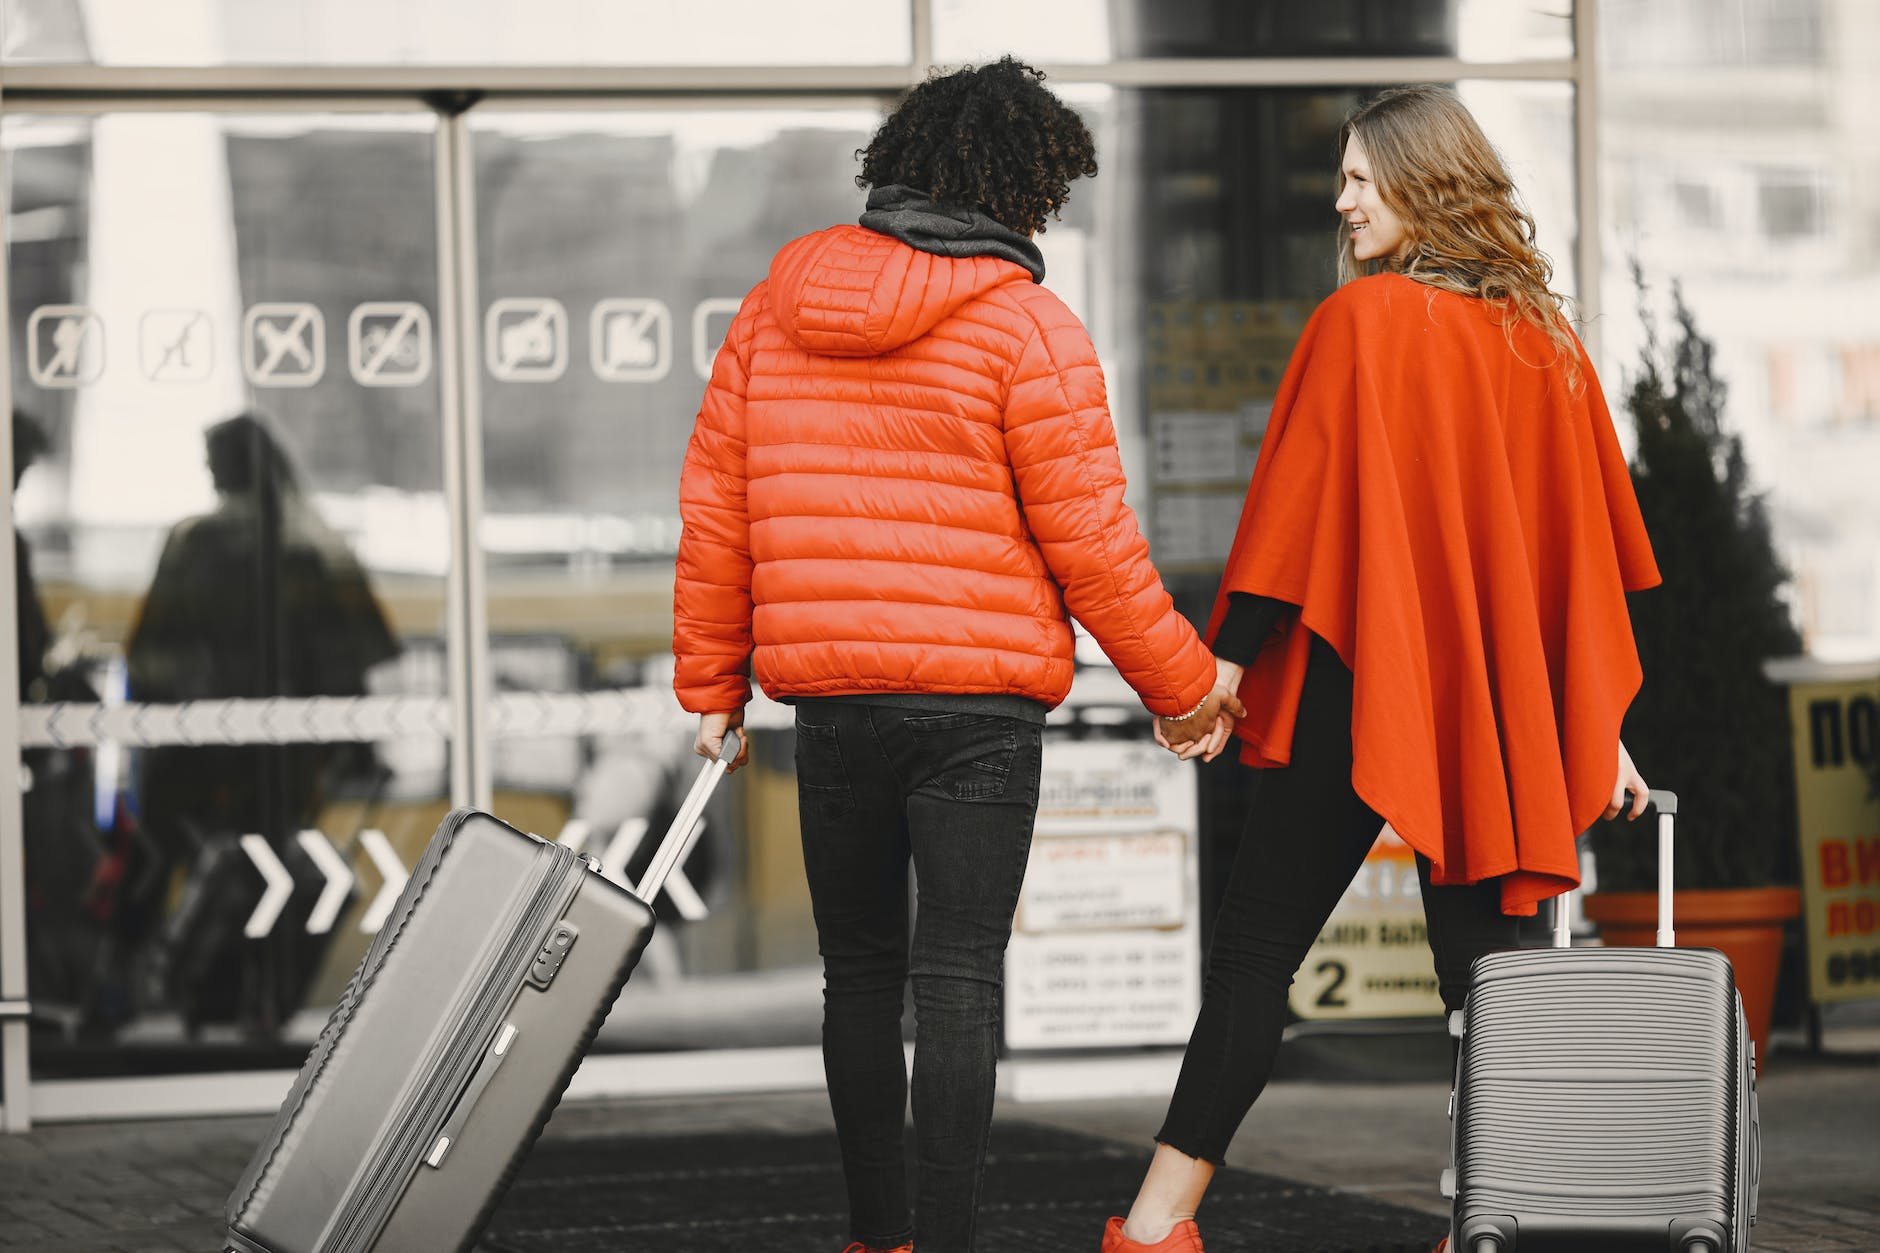 廉價航空「隨身手提行李」長寬高與重量限制懶人包